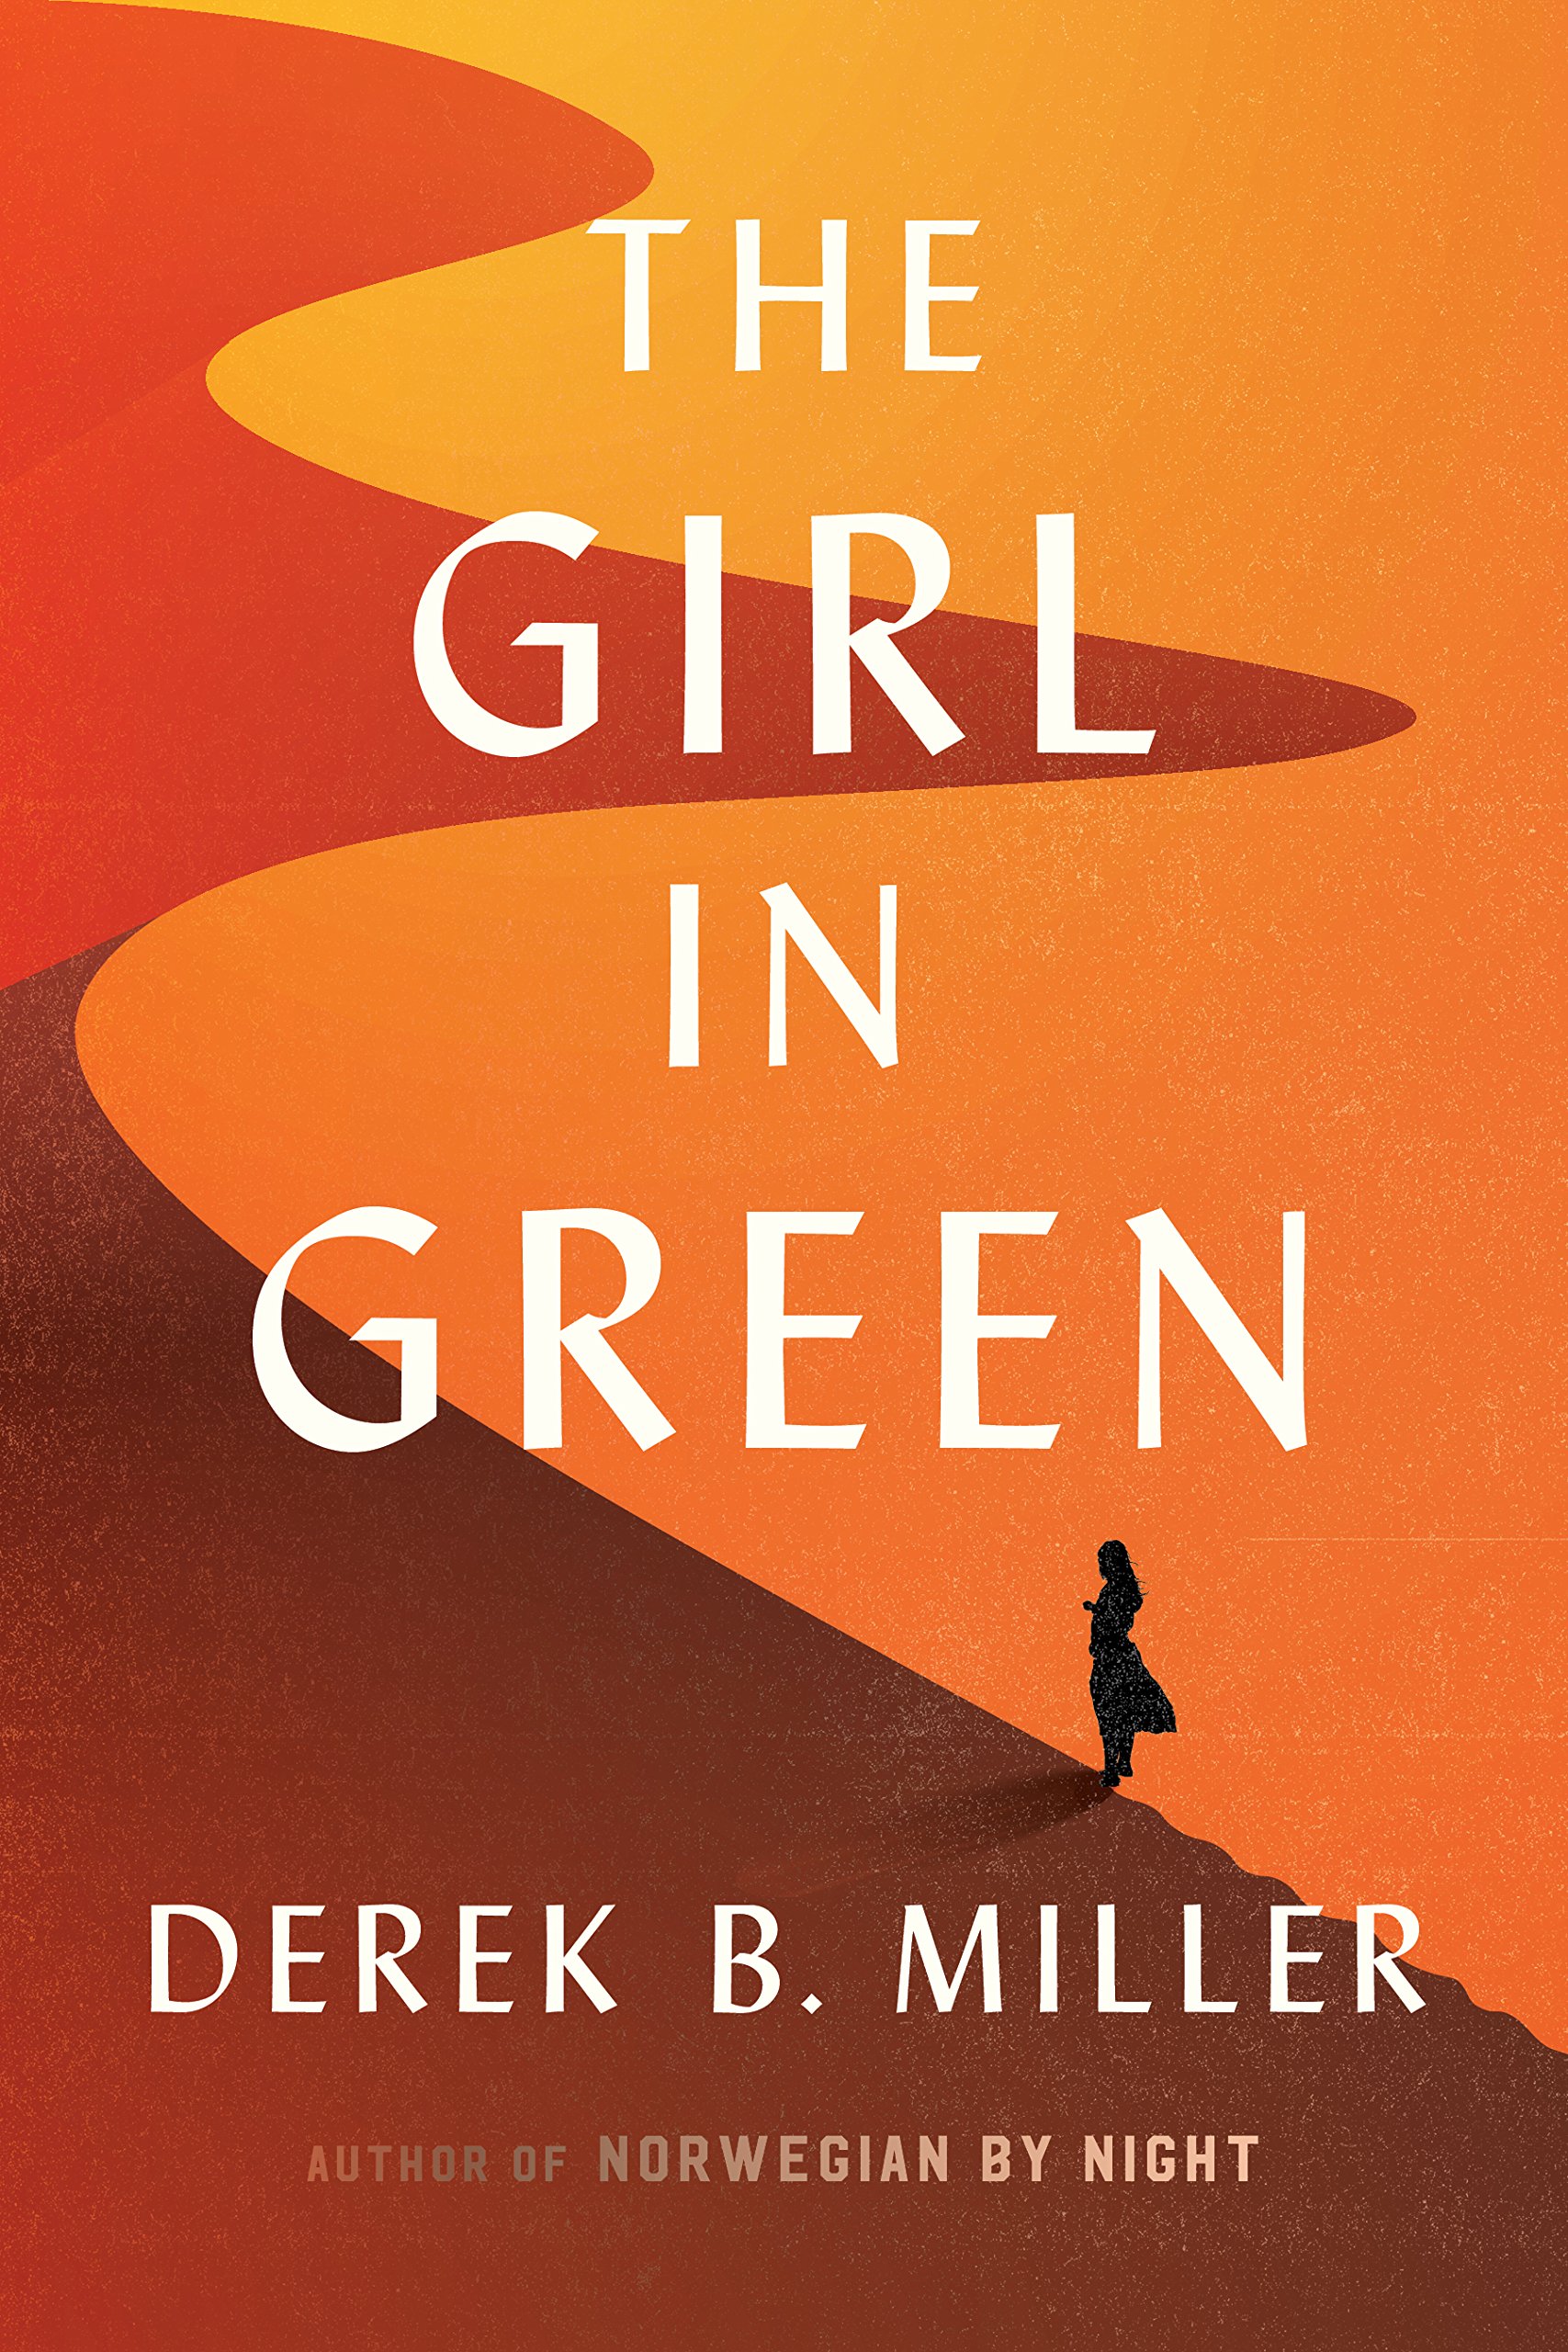 The Girl in Green: Derek B. Miller: 9780544706255: Amazon.com: Books